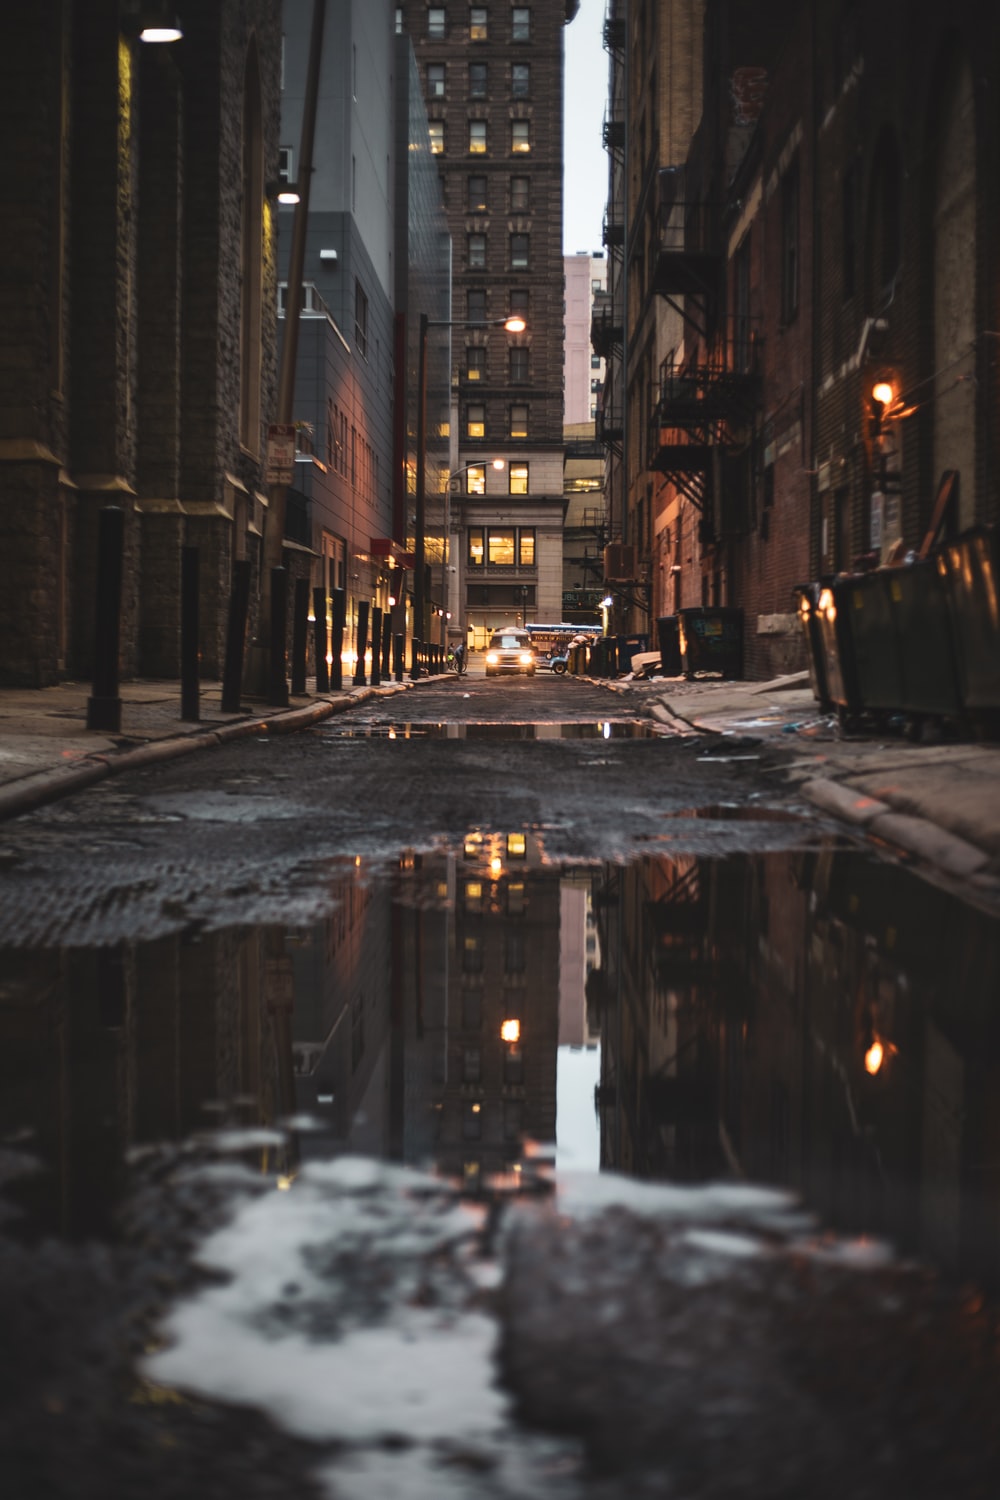 Rainy Street Pictures Image